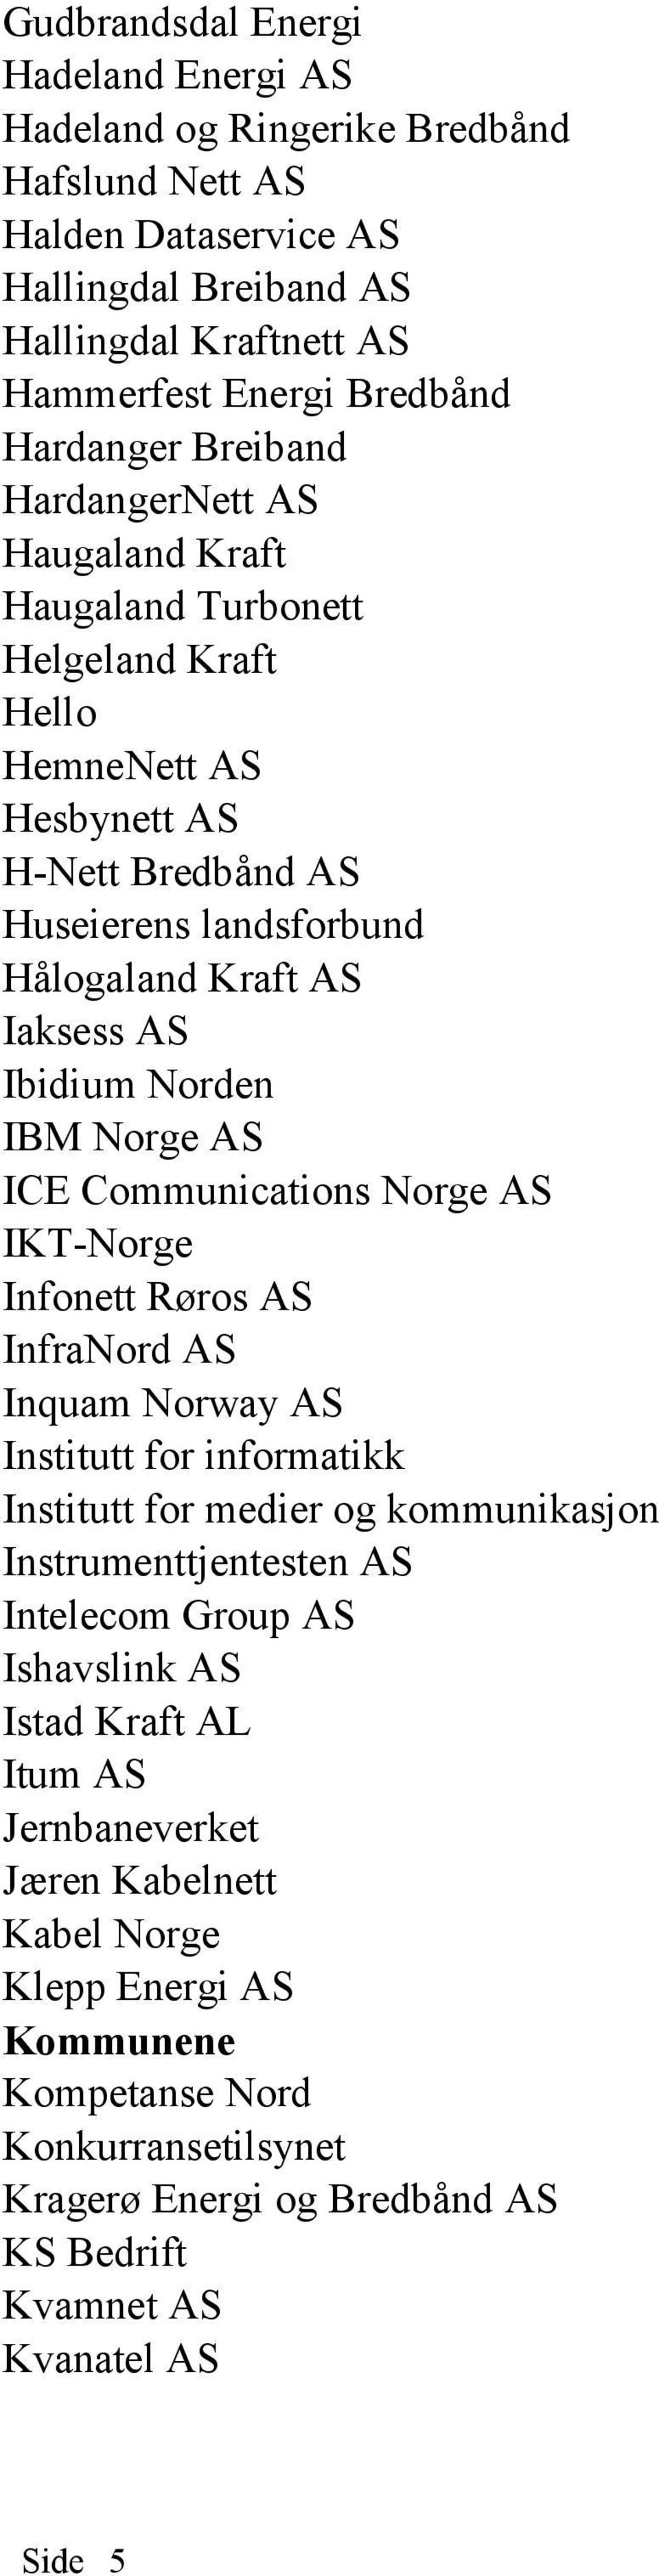 IBM Norge AS ICE Communications Norge AS IKT-Norge Infonett Røros AS InfraNord AS Inquam Norway AS Institutt for informatikk Institutt for medier og kommunikasjon Instrumenttjentesten AS Intelecom